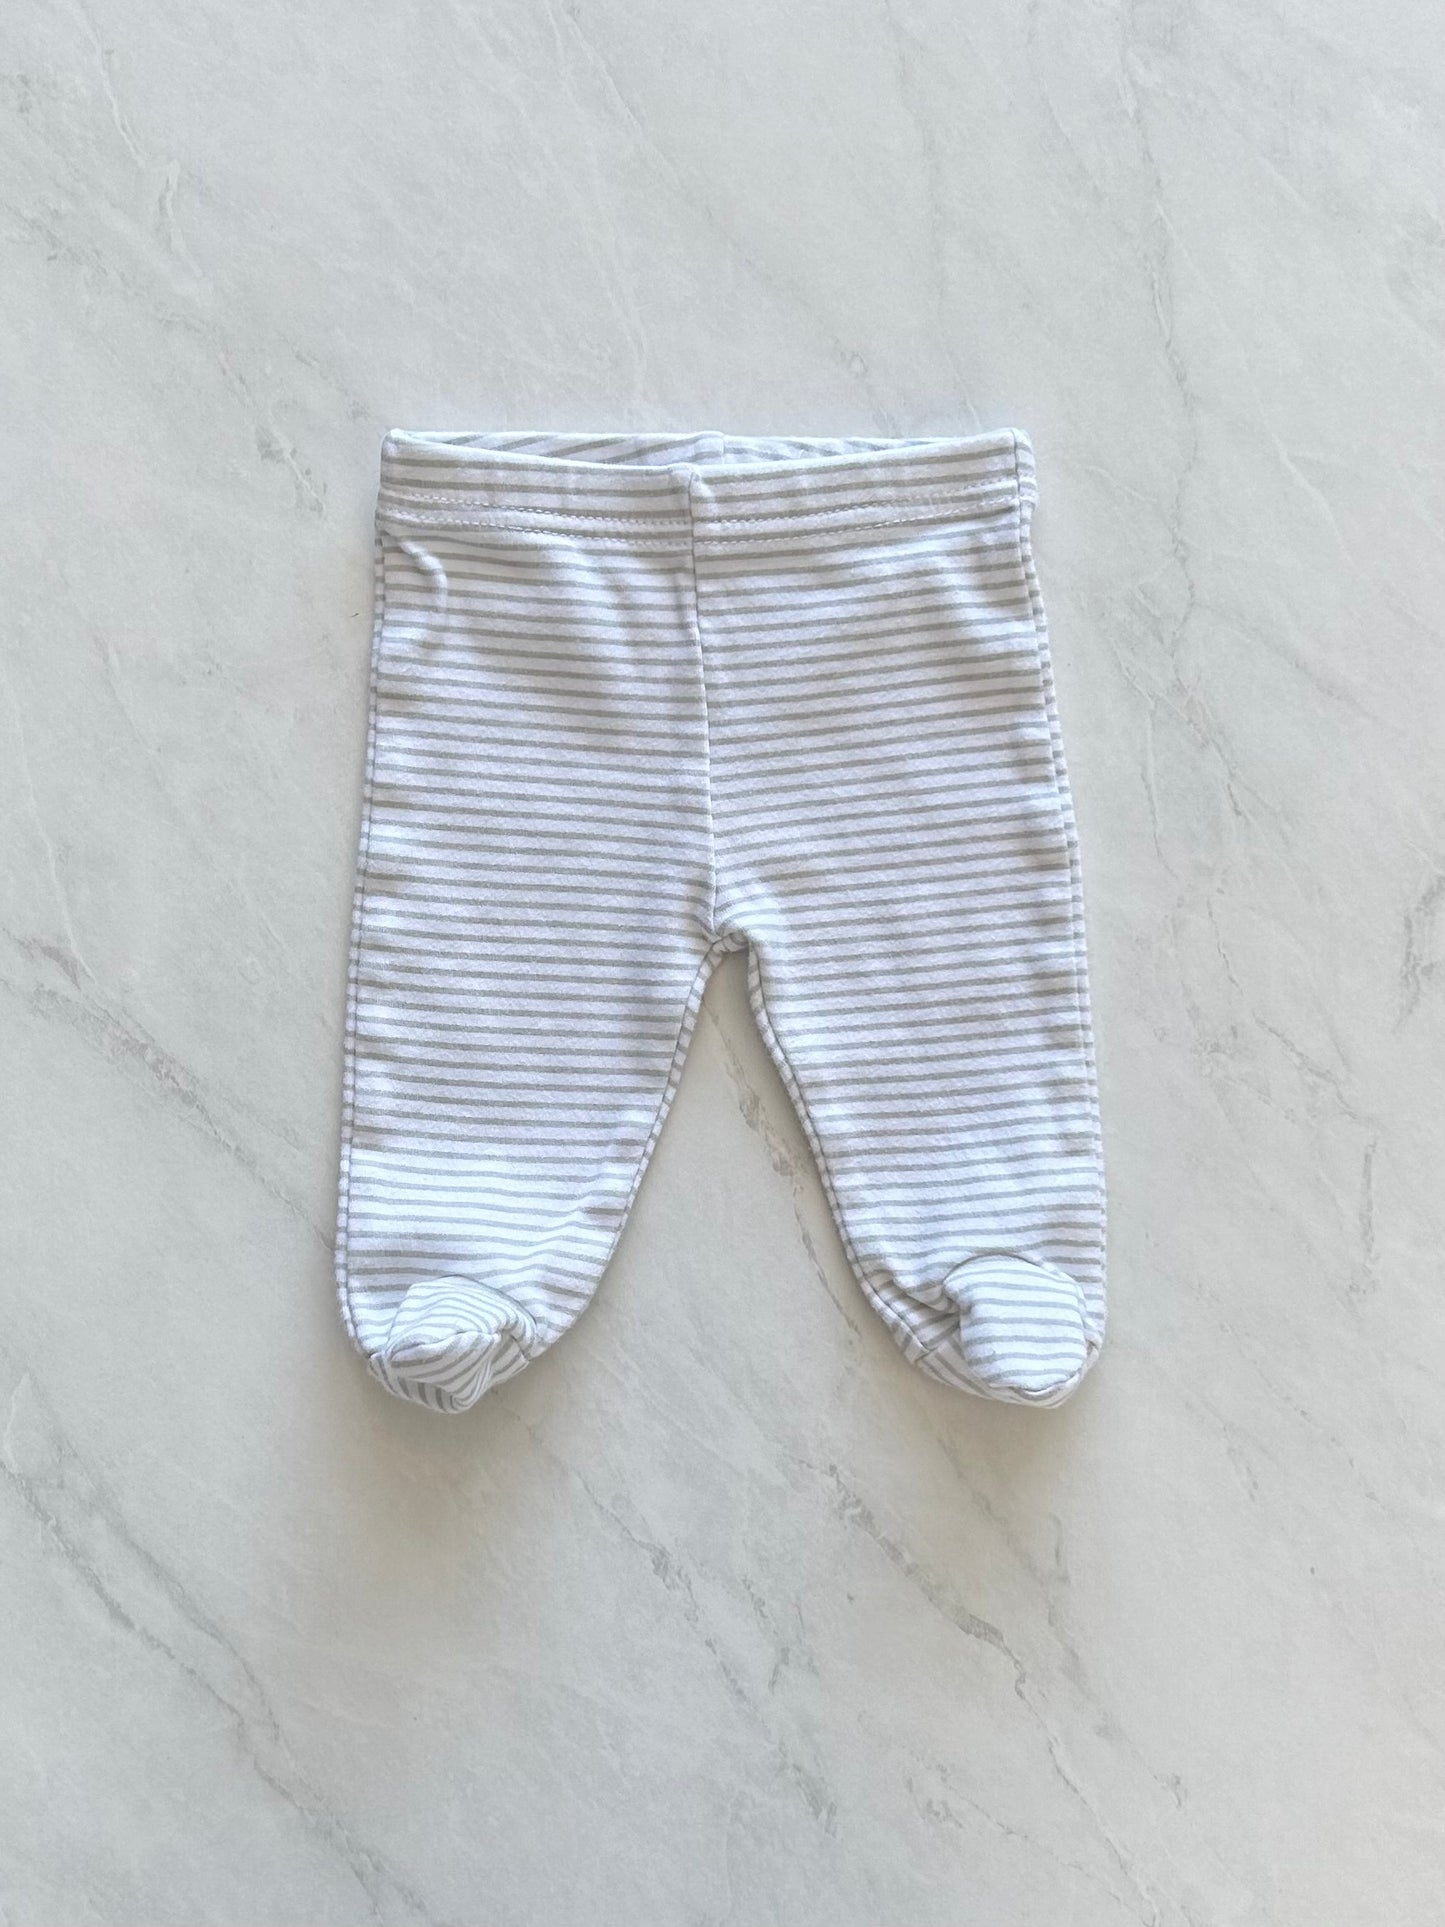 Pantalon à pattes - NB (pas d’étiquette)